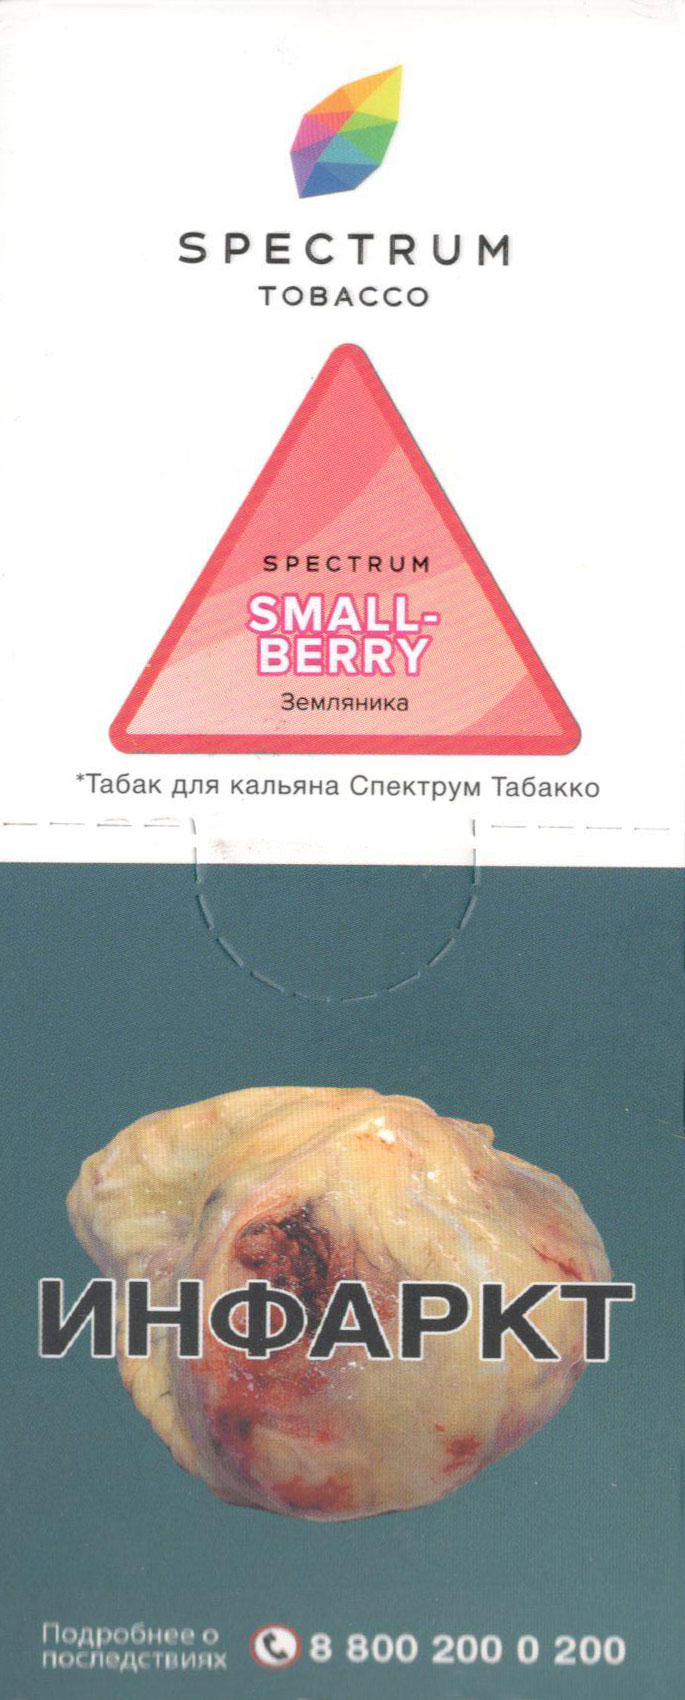 Spectrum- Земляника (Smallberry) фото